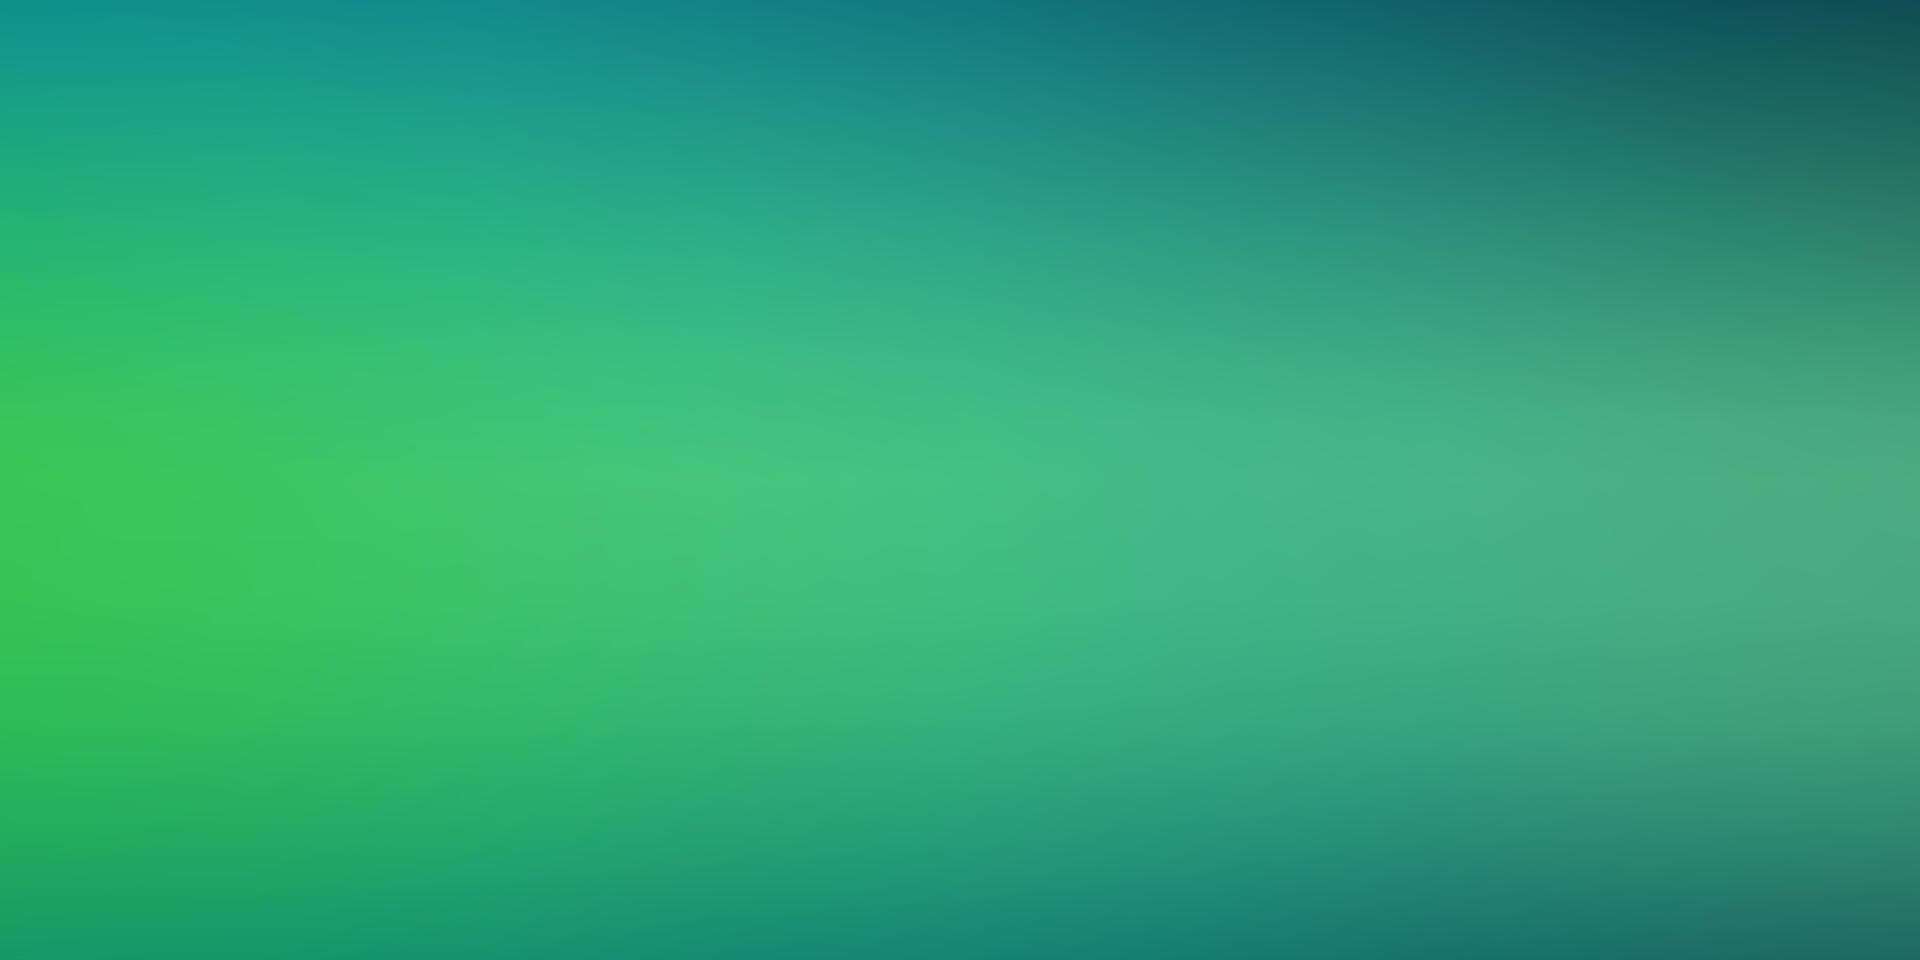 ljusblå, grön vektor smart suddig mall.